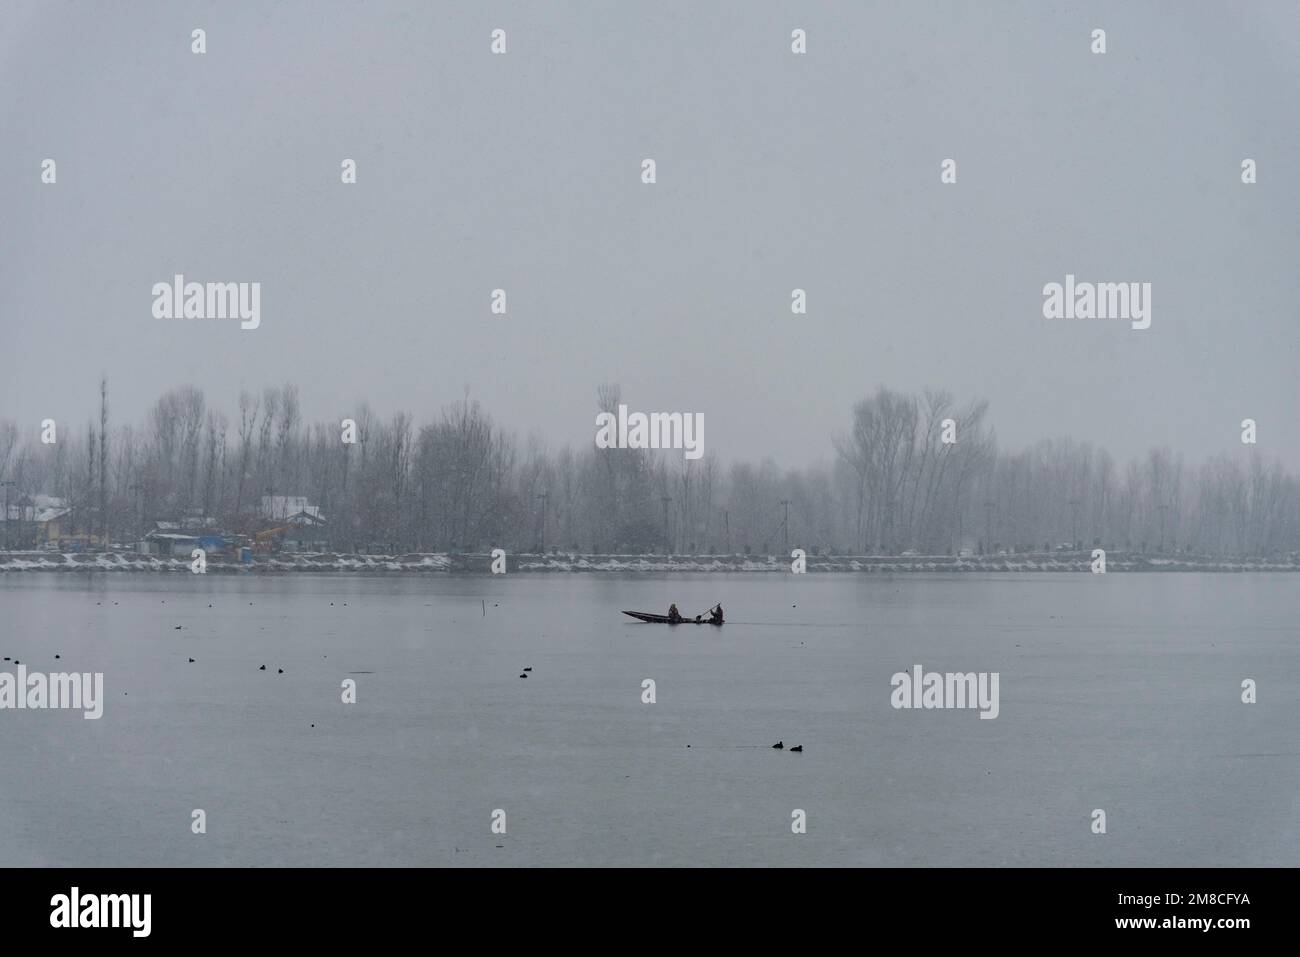 Una donna rema la sua barca sul lago dal durante le nevicate. Il Kashmir ha ricevuto nevicate fresche, con le cali più alte della valle che hanno ricevuto nevicate da moderate a pesanti e nevicate da leggere a moderate in pianura, causando una visibilità distruttiva. Questo ha influito sulle operazioni di volo insieme alla chiusura dell'autostrada nazionale Srinagar-Jammu. Foto Stock